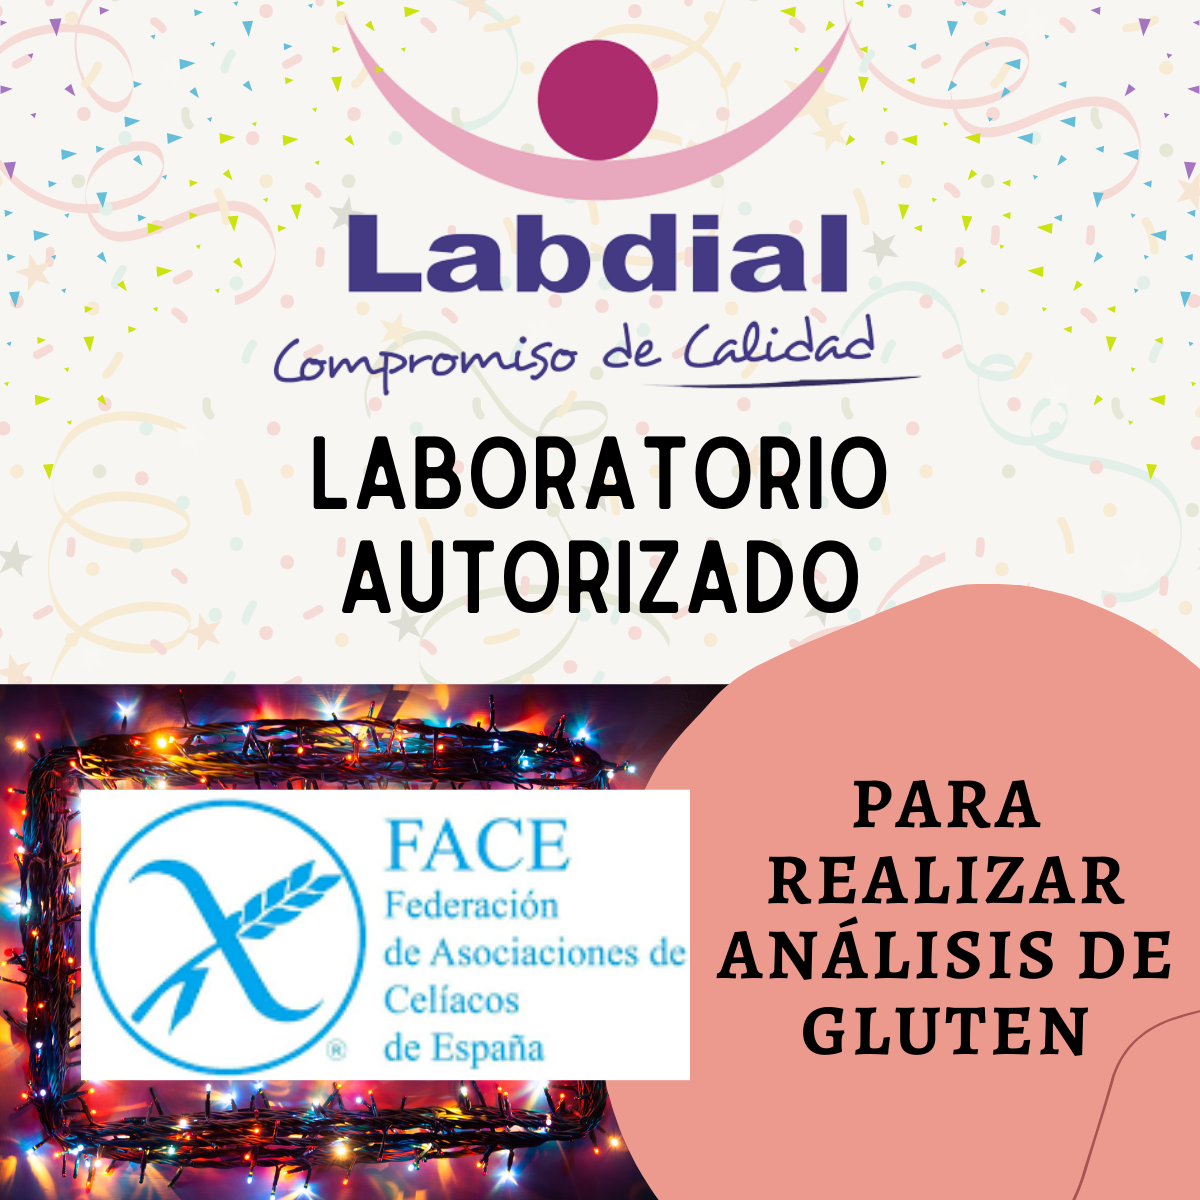 Labdial-laboratorio-autorizado-por-face-para-analisis-de-gluten